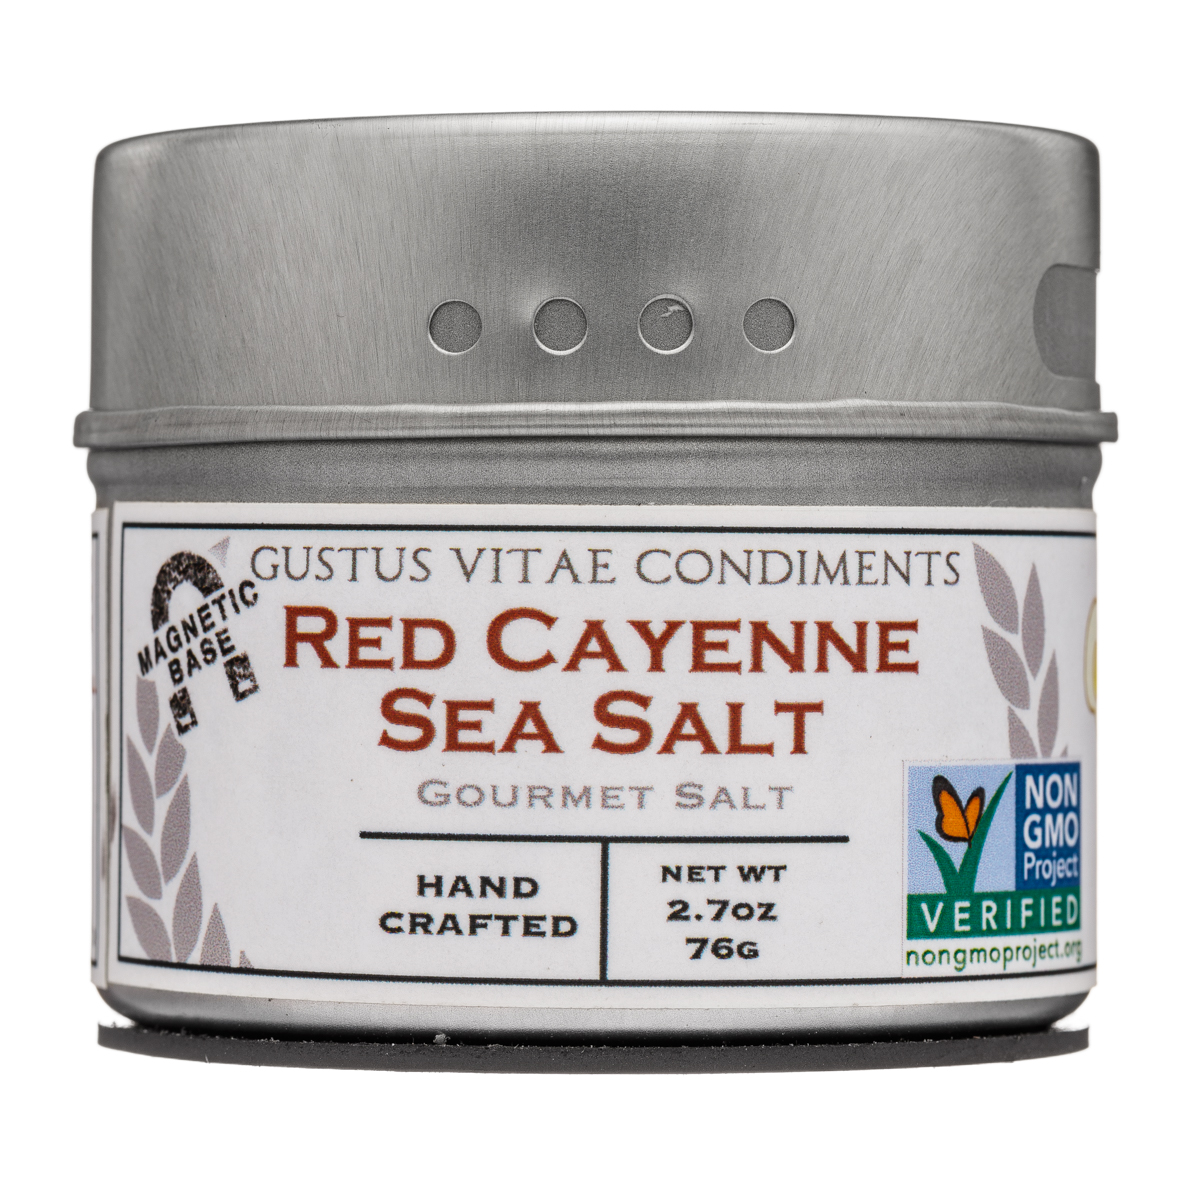 Red Cayenne